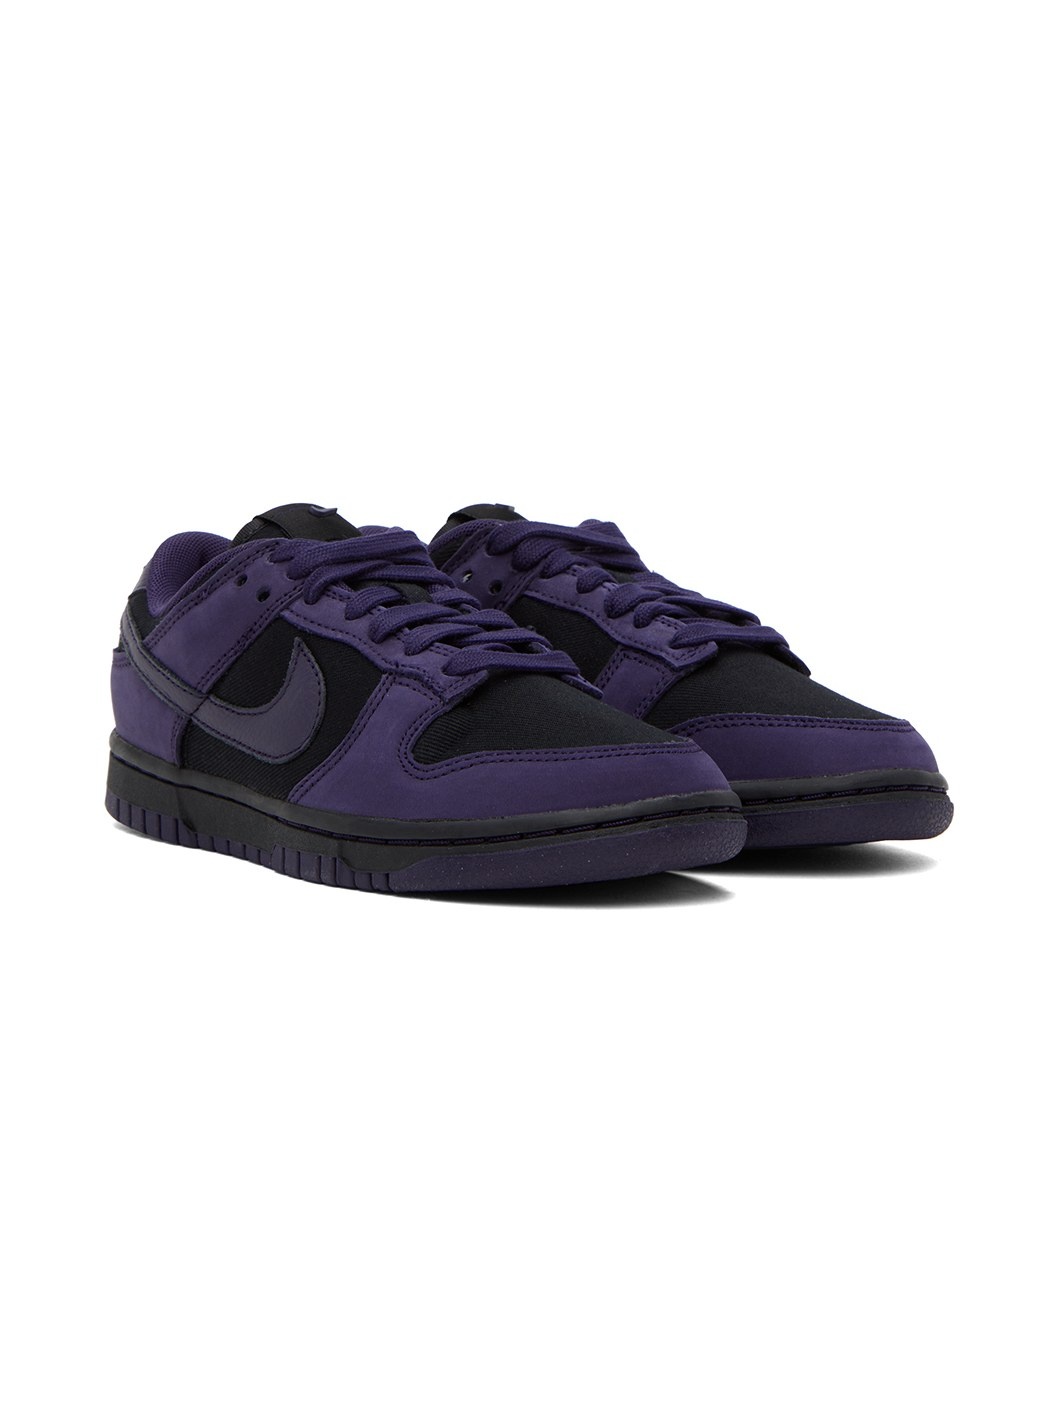 Purple & Black Dunk Low LX Sneakers - 4